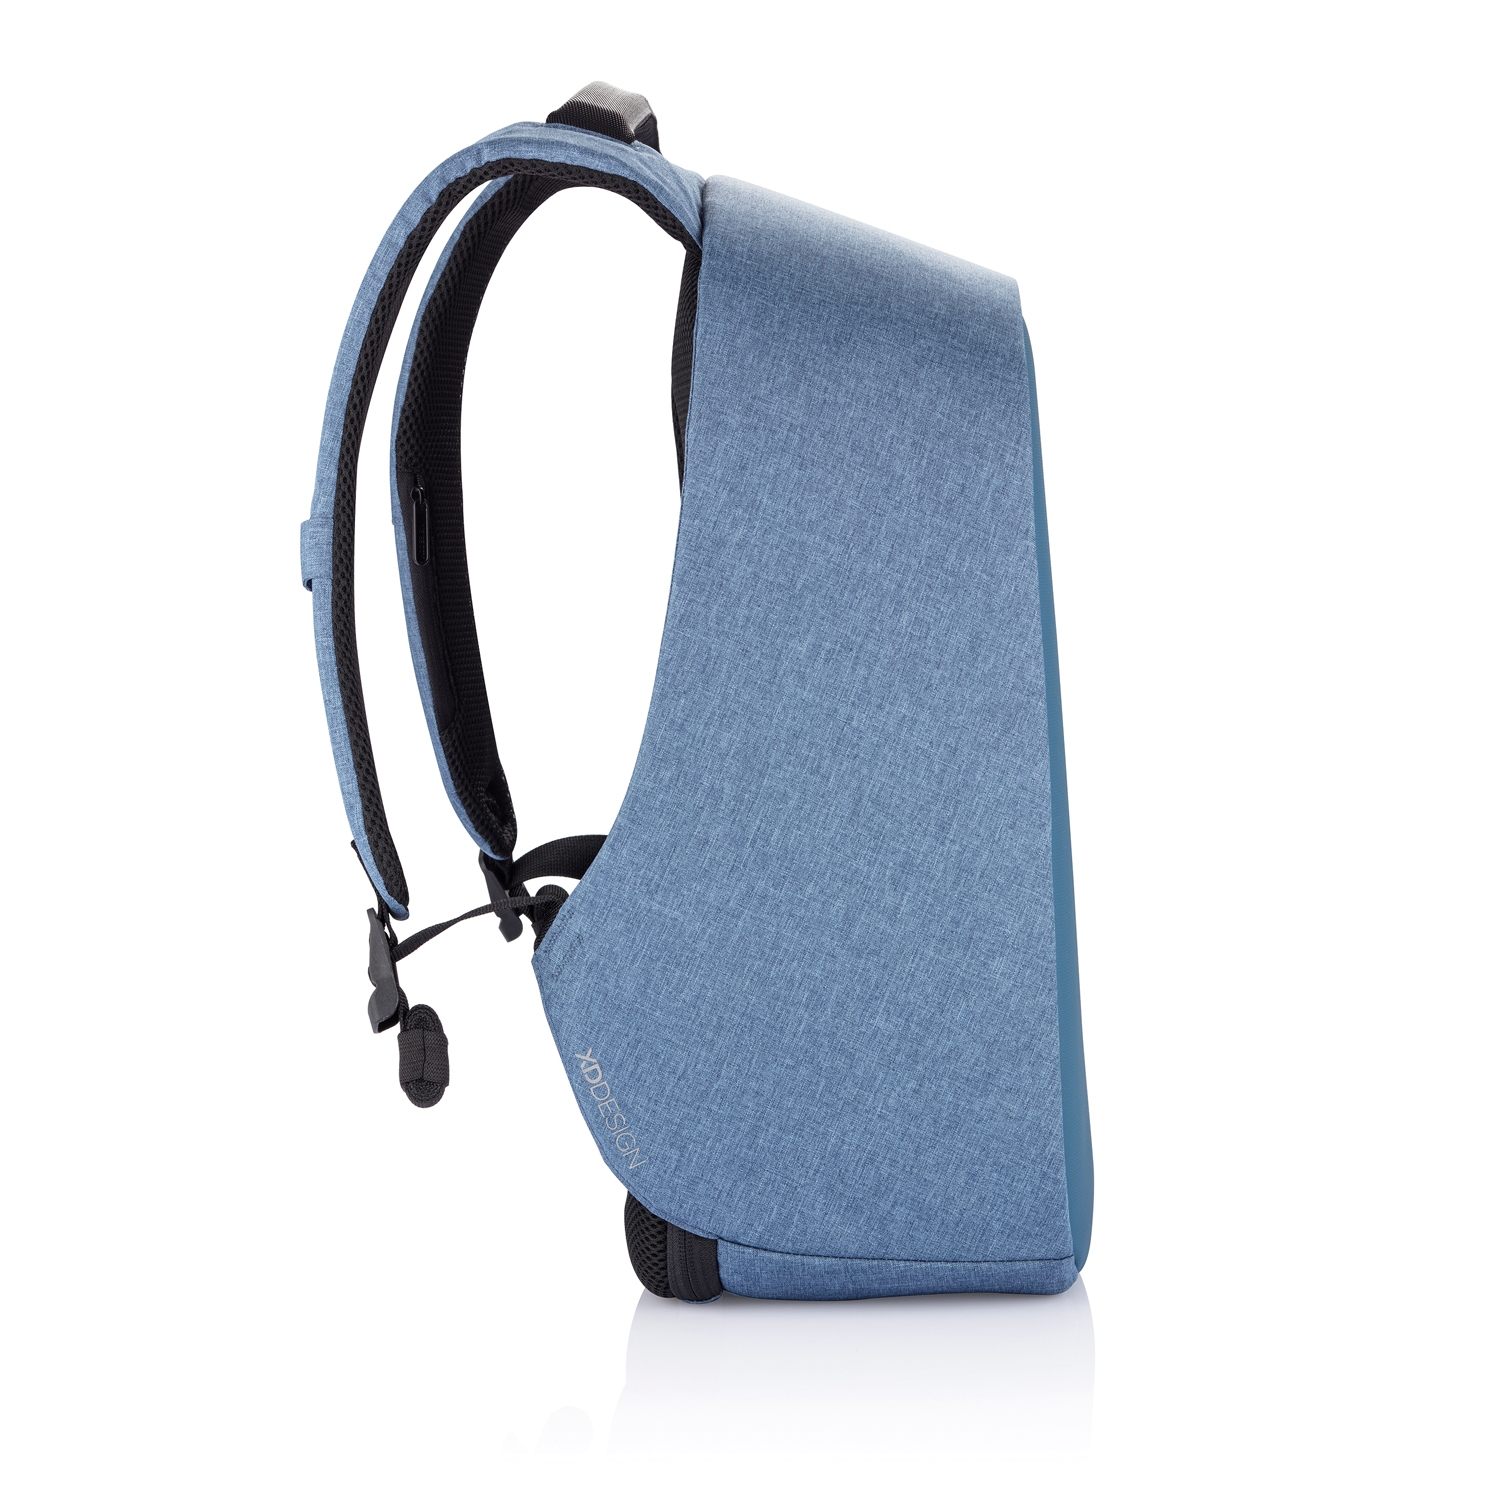 Антикражный рюкзак Bobby Hero Regular, голубой, rpet; polyurethane